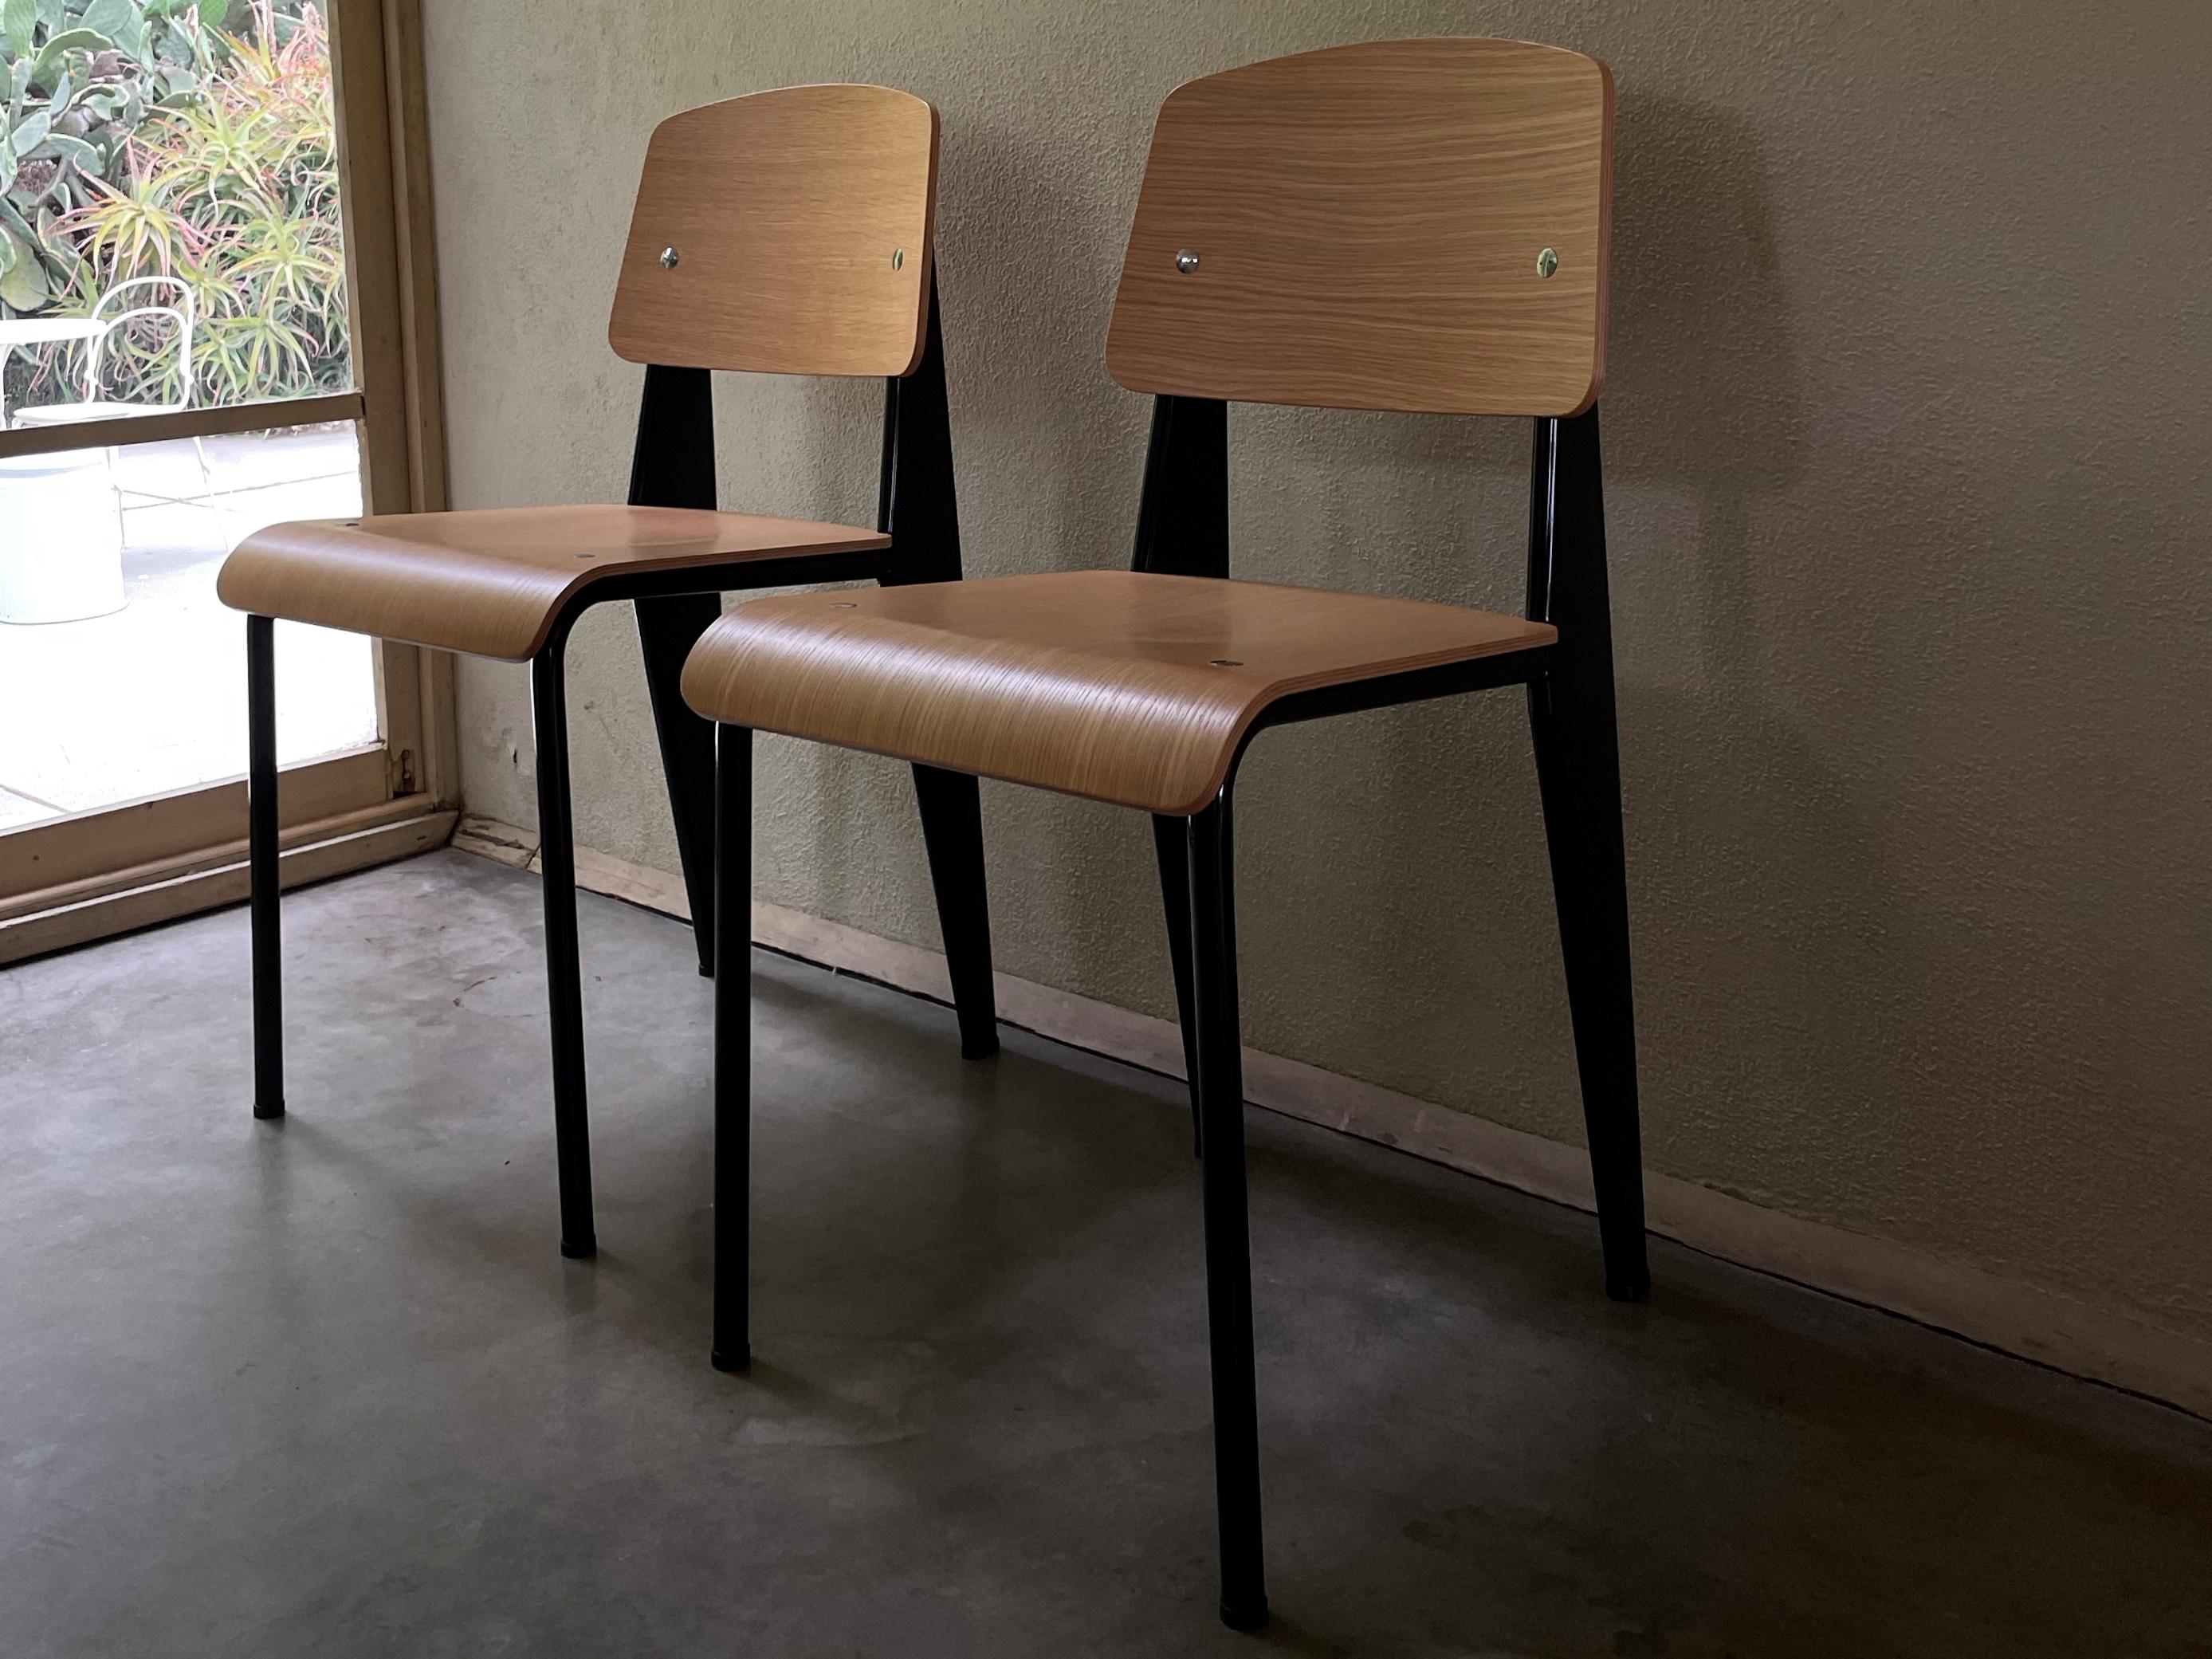 Chaise standard Jean Prouvé en chêne naturel et métal noir pour Vitra. La chaise standard est un chef-d'œuvre précoce du designer et ingénieur français Jean Prouvé. Conçue à l'origine en 1934, la Standard est devenue l'un des classiques les plus